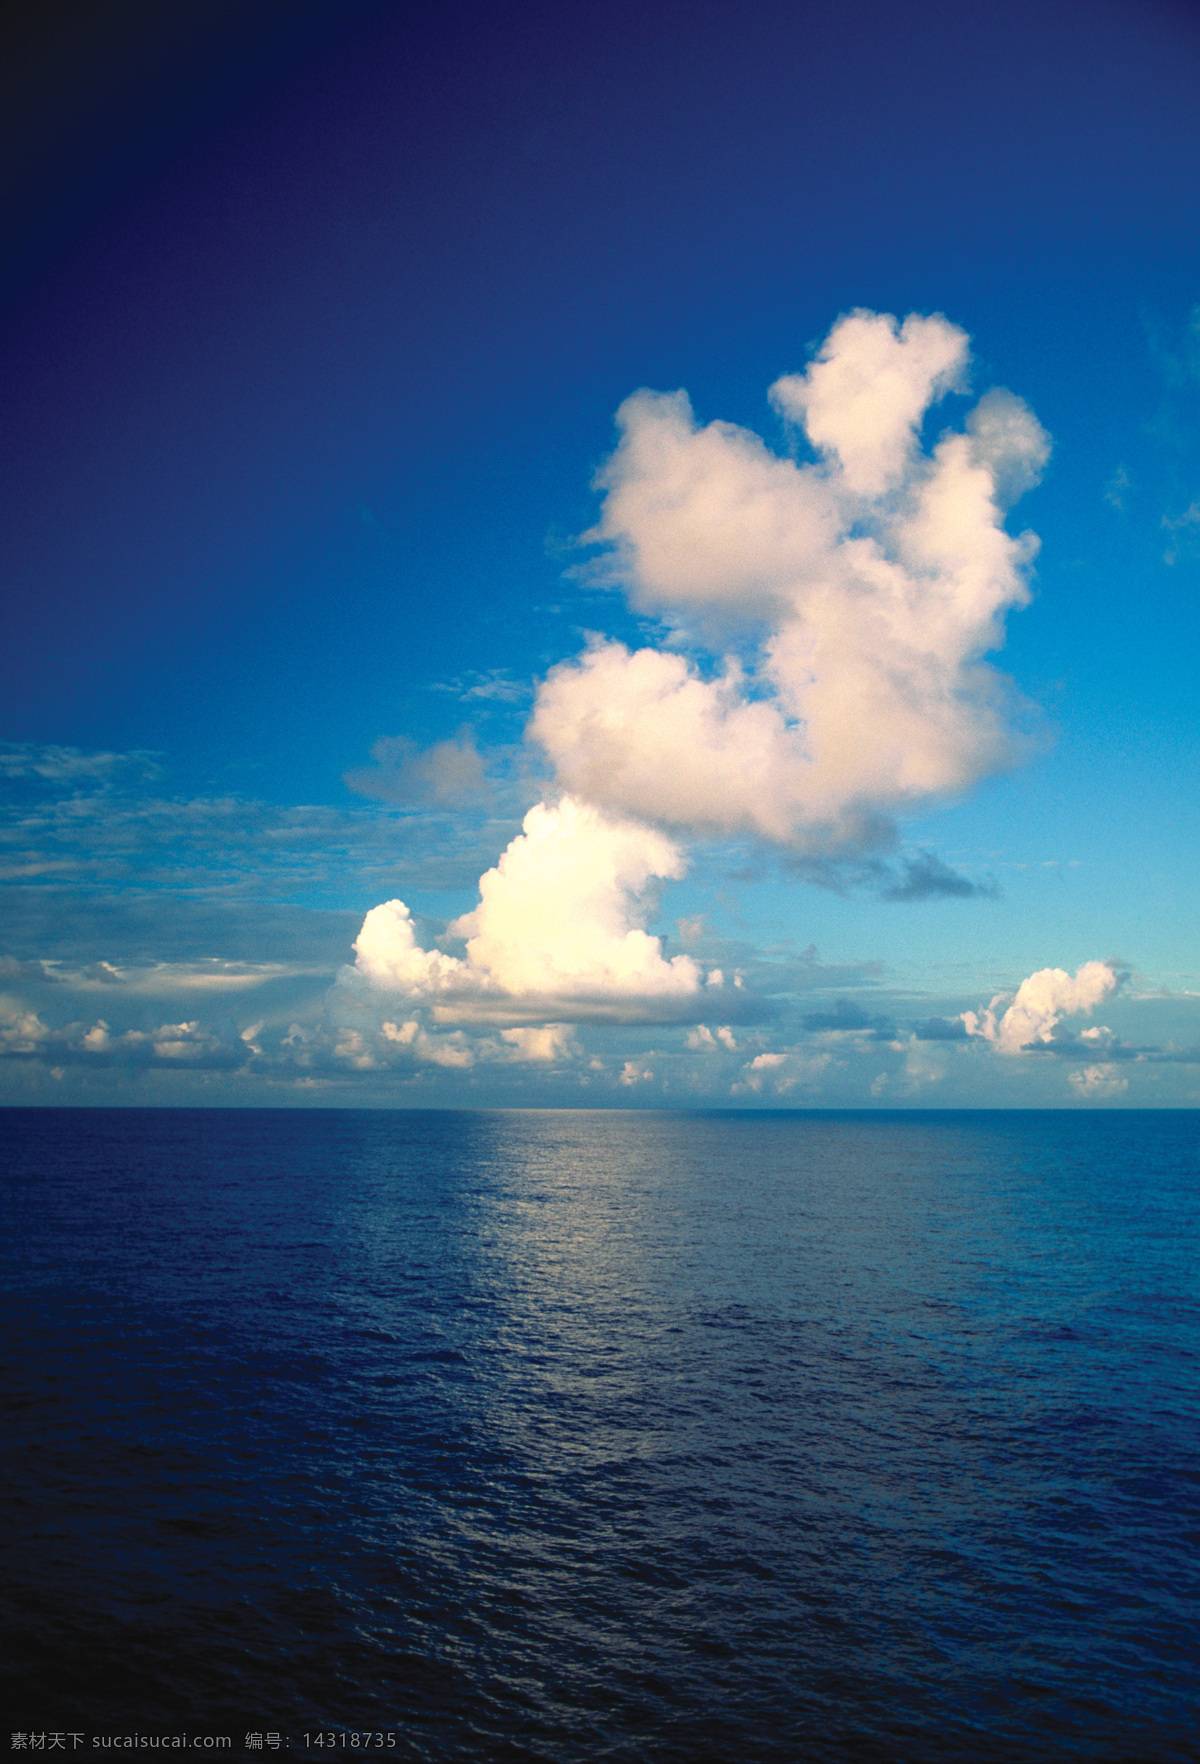 高清 唯美 海上 落日 傍晚 夕阳 晚霞 海面 美景 海洋 蓝天白云 风景图片 摄影图片 天空图片